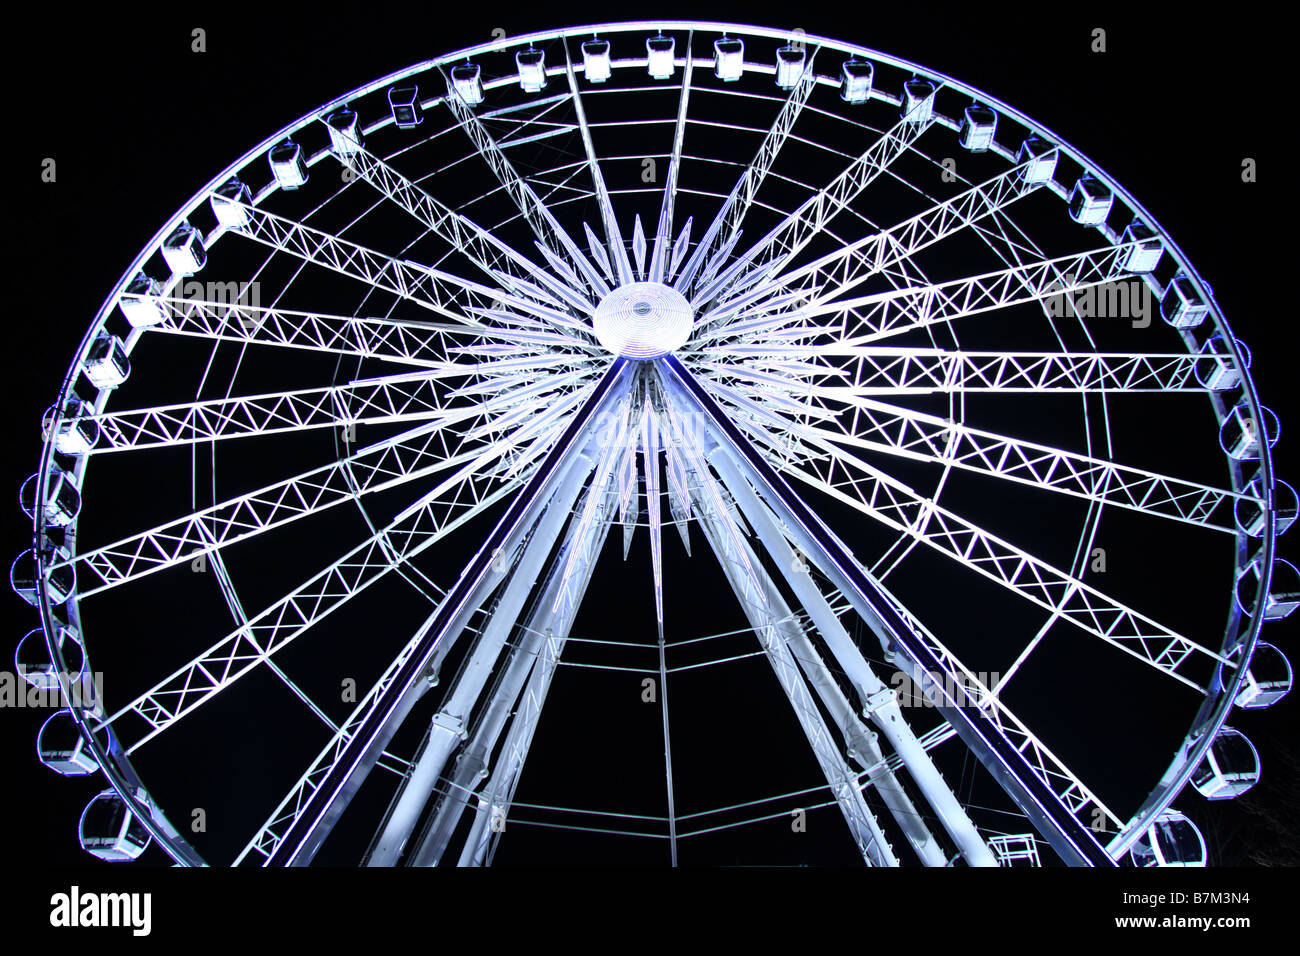 Grande roue illuminée/ferris fairground ride, Winter Wonderland, Hyde Park, London, UK Banque D'Images